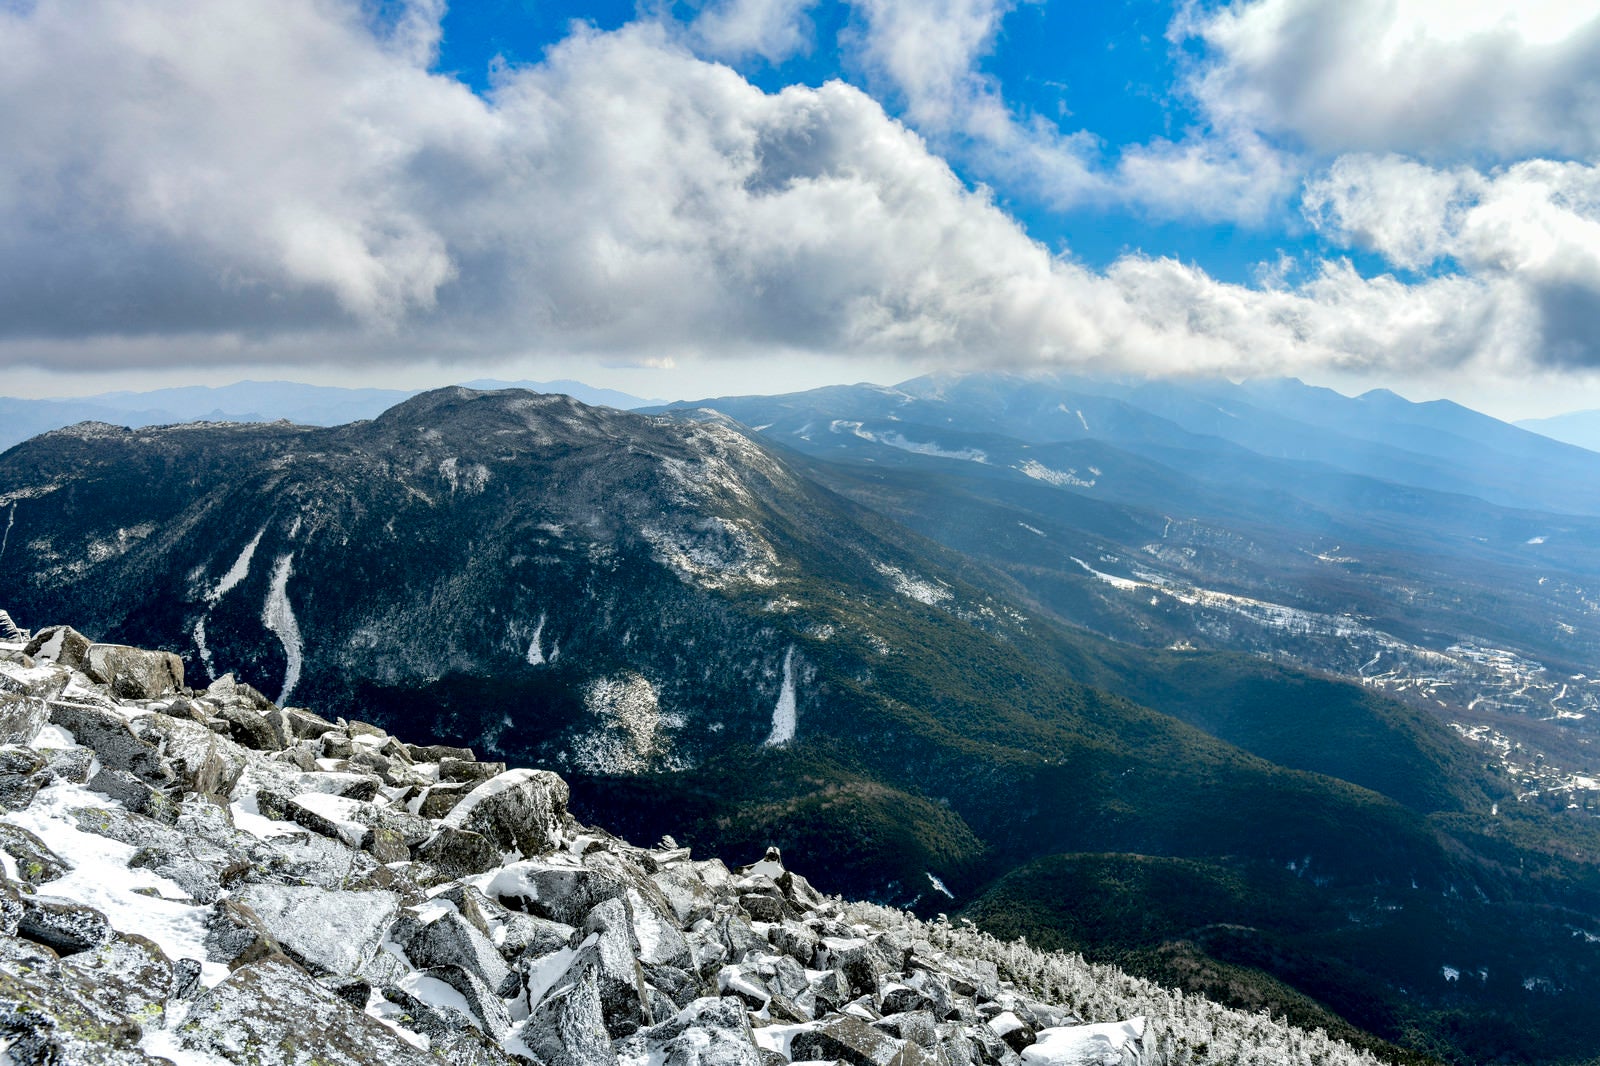 「蓼科山山頂から見る北八ヶ岳の山々」の写真